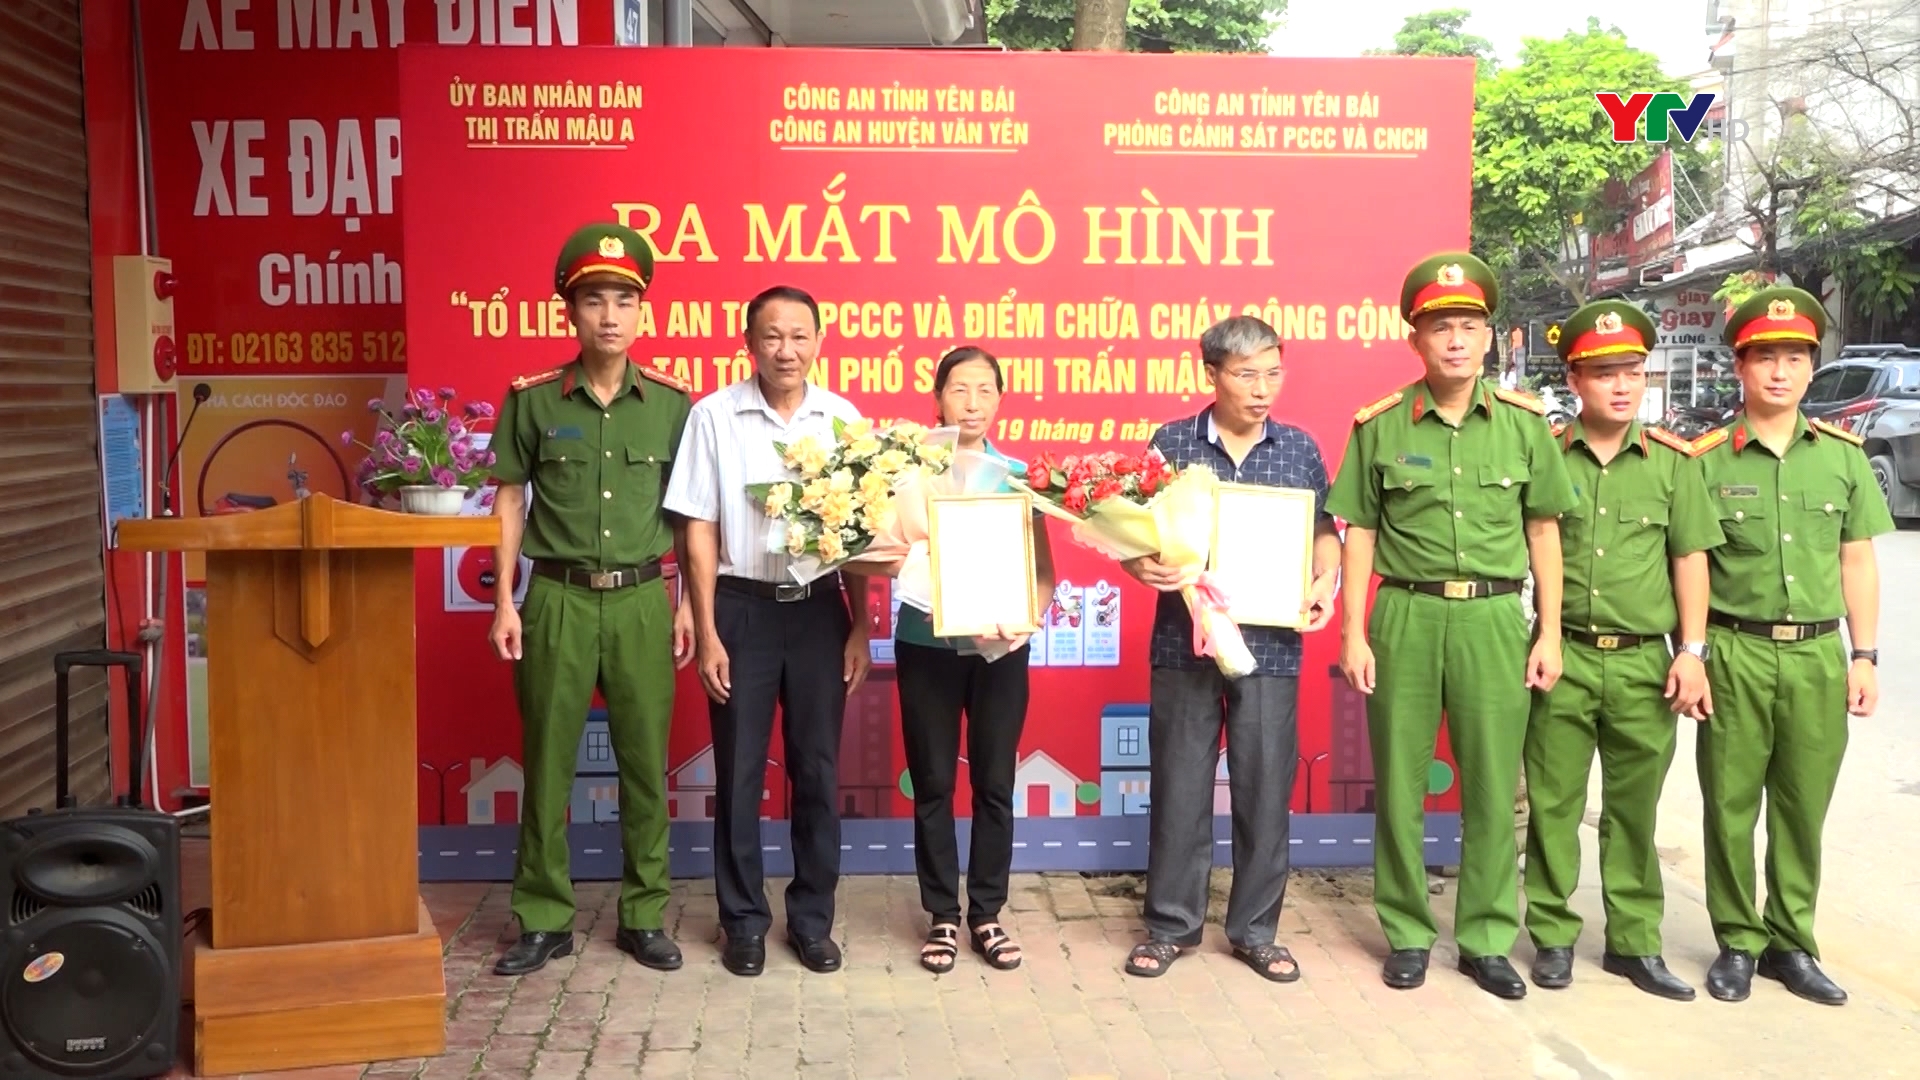 Ra mắt mô hình “Tổ liên gia an toàn PCCC” và mô hình “Điểm chữa cháy công cộng” tại huyện Văn Yên